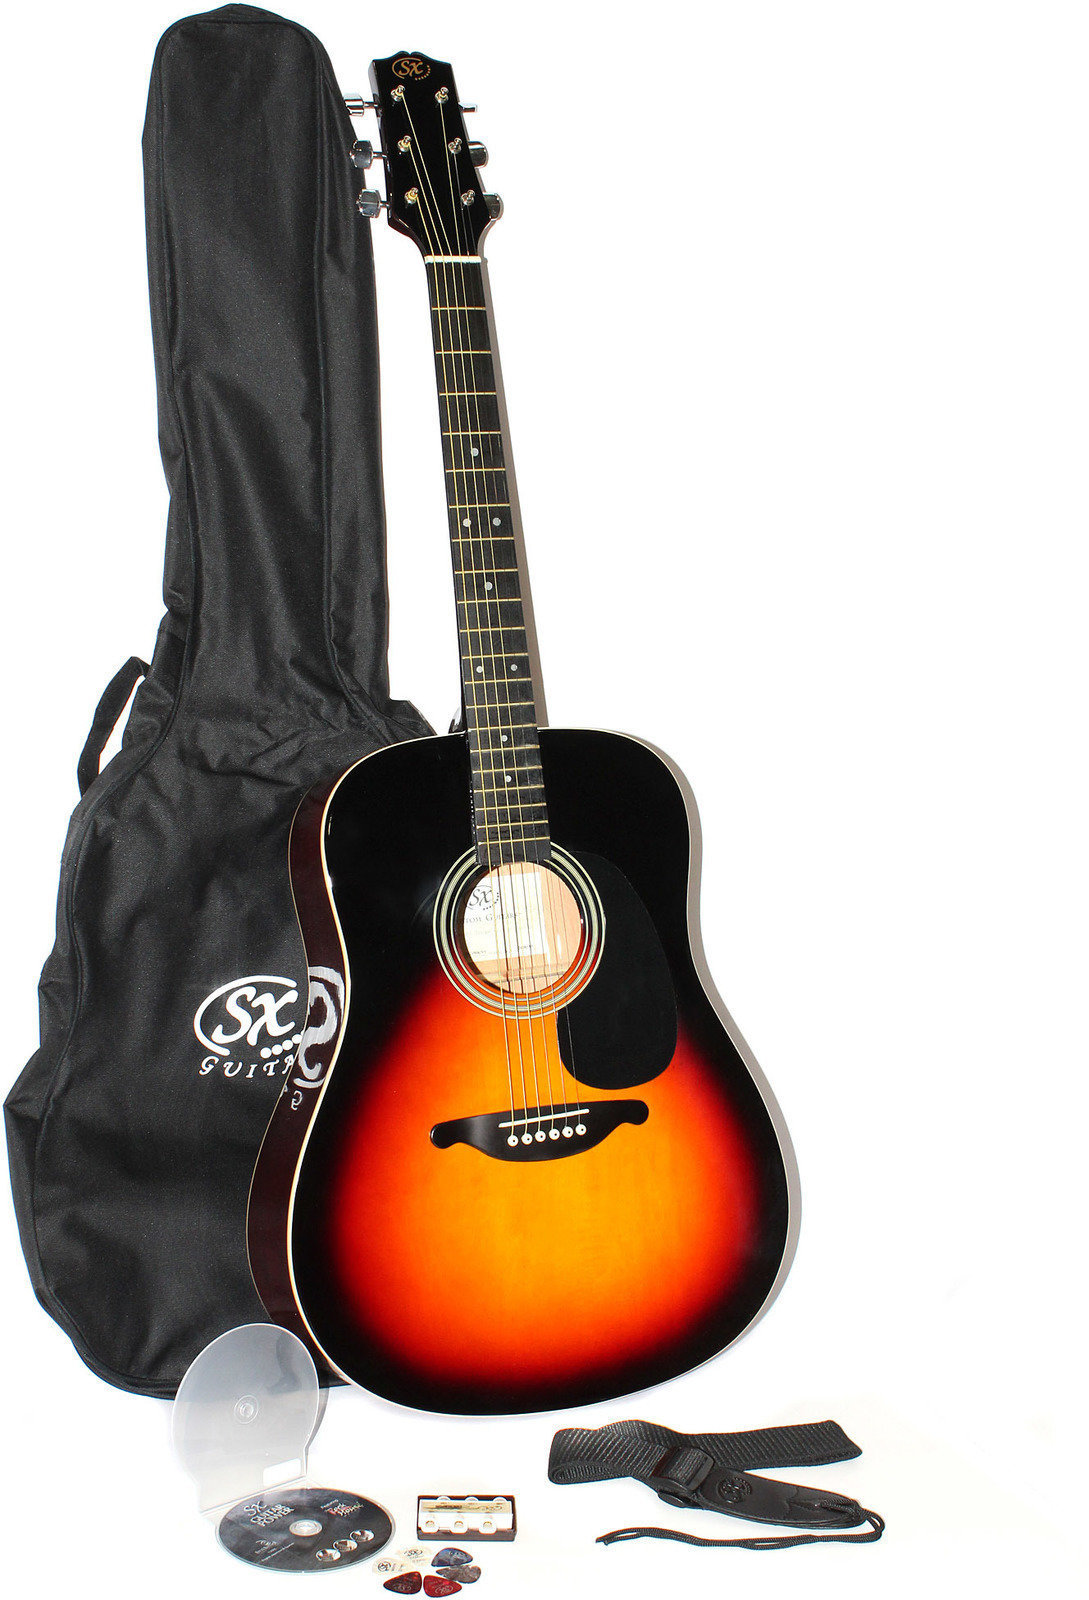 Akoestische gitaarset SX DG 150 K VS